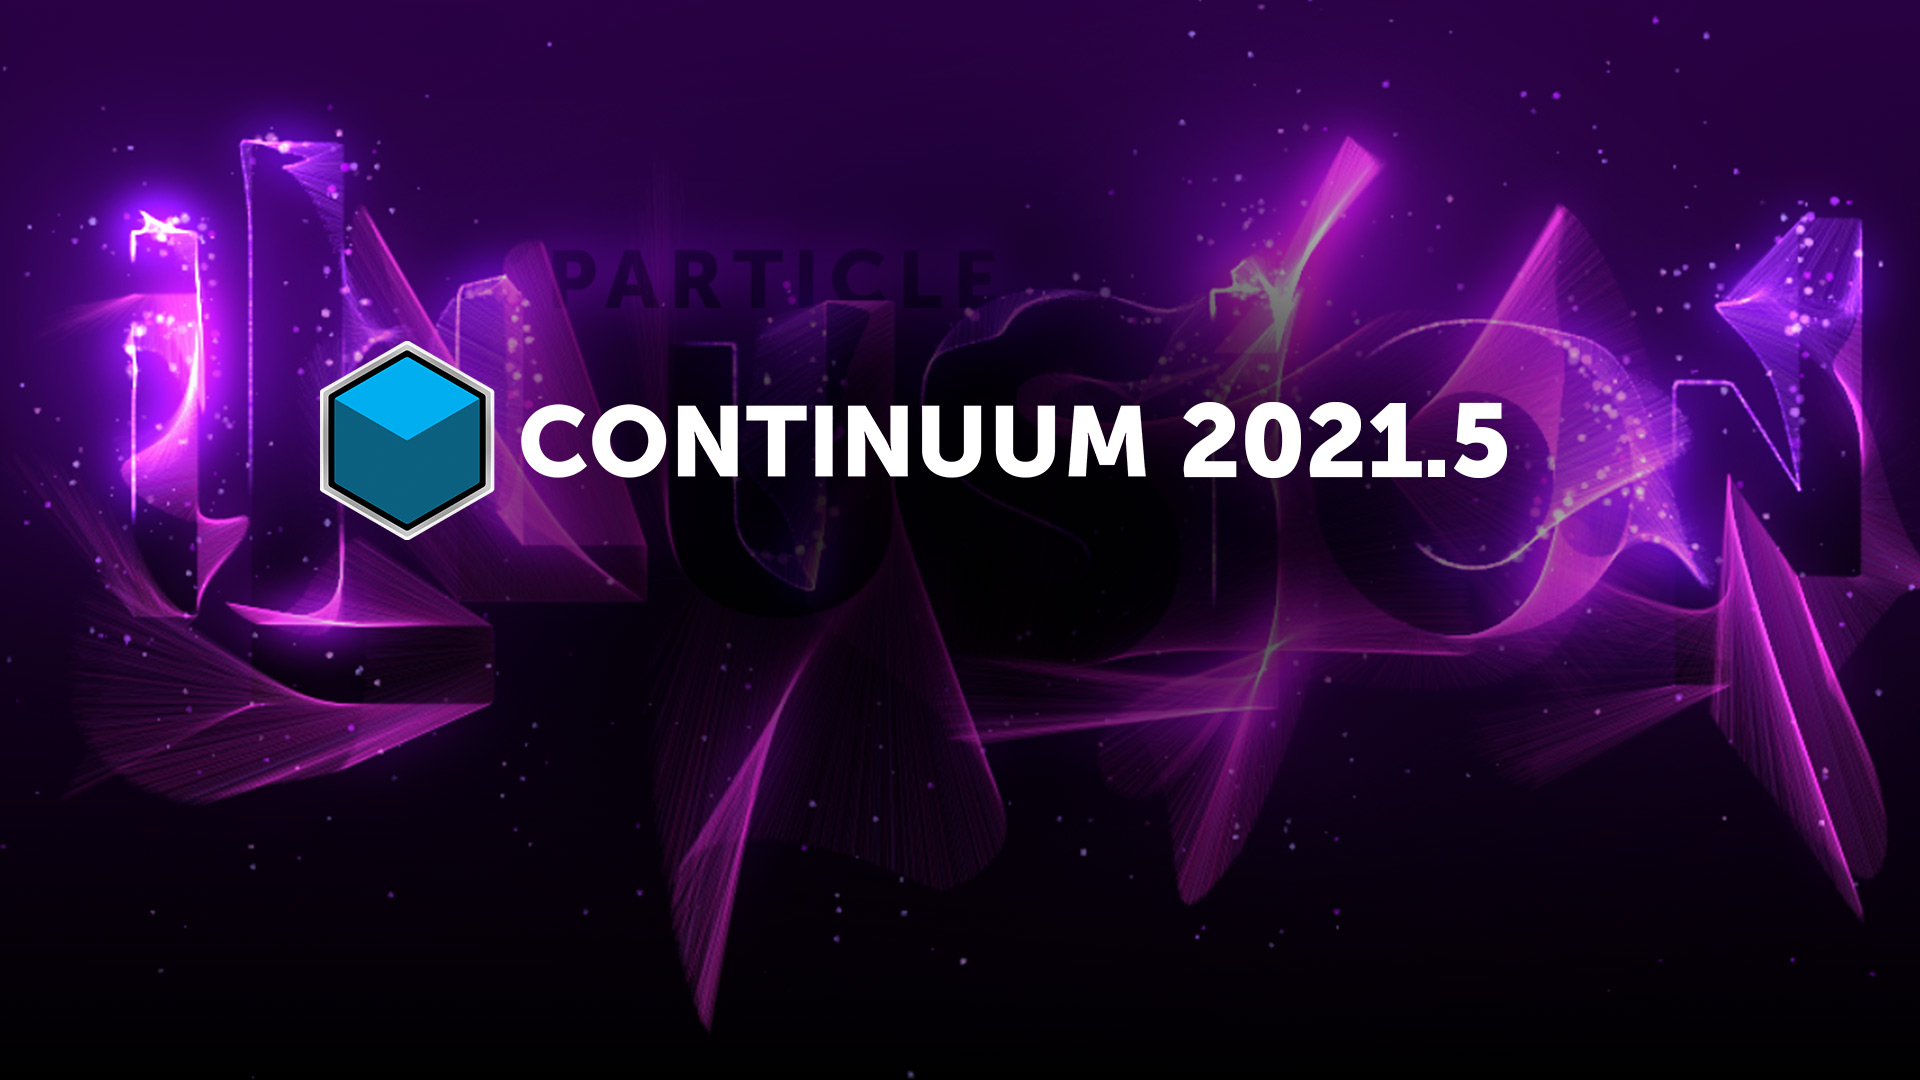 Boris FX Continuum
                                        2021.5 - Particle Illusion hero
                                        image